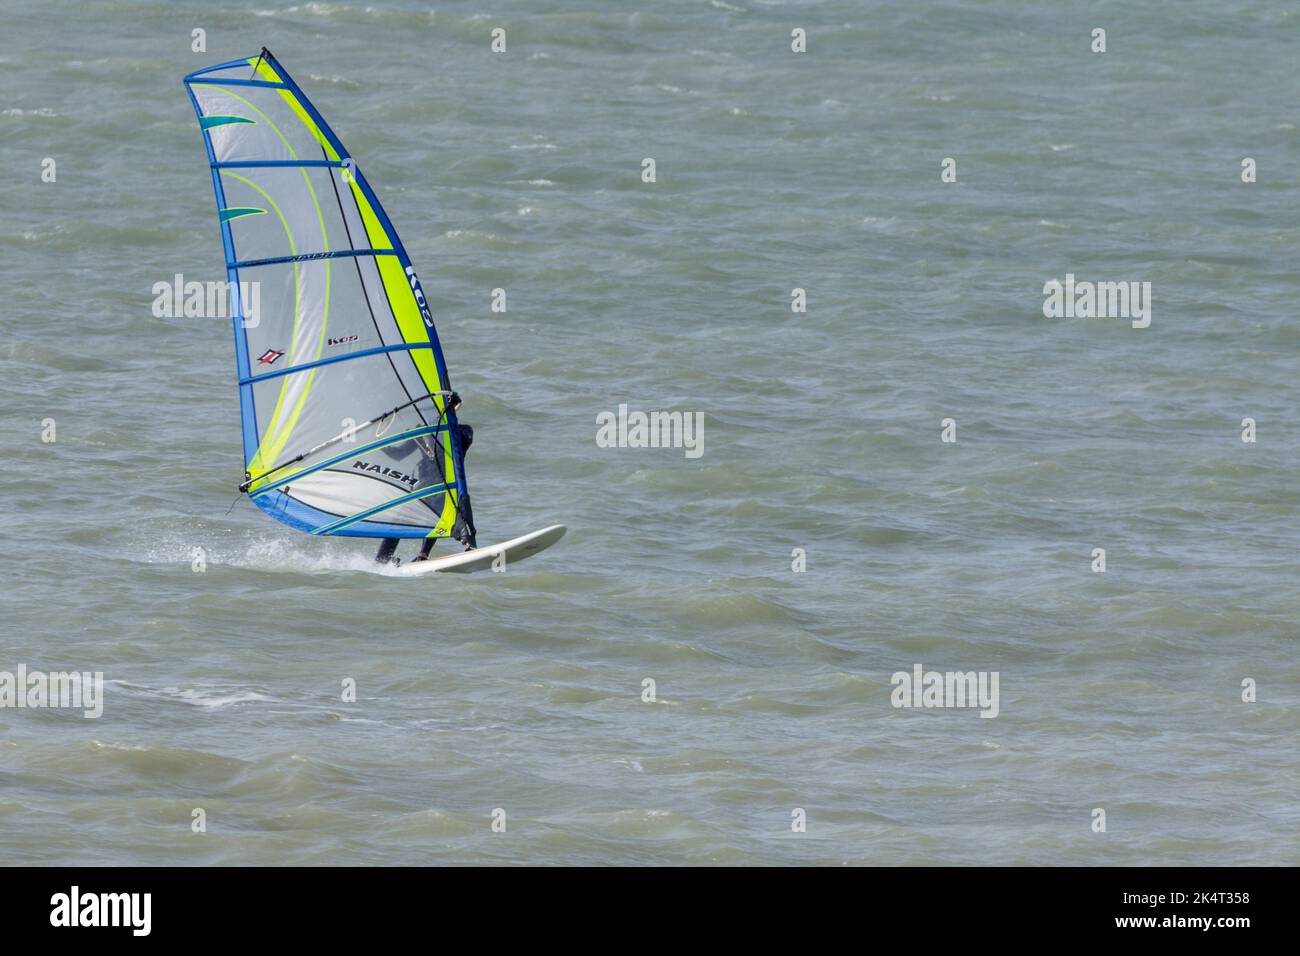 Wassersport Windsurfen im Meer mit Segel für den Fang des Windes, um das Board zu treiben und Surfer Segel wird gekippt und gedreht, um zu steuern und Wind zu fangen Stockfoto